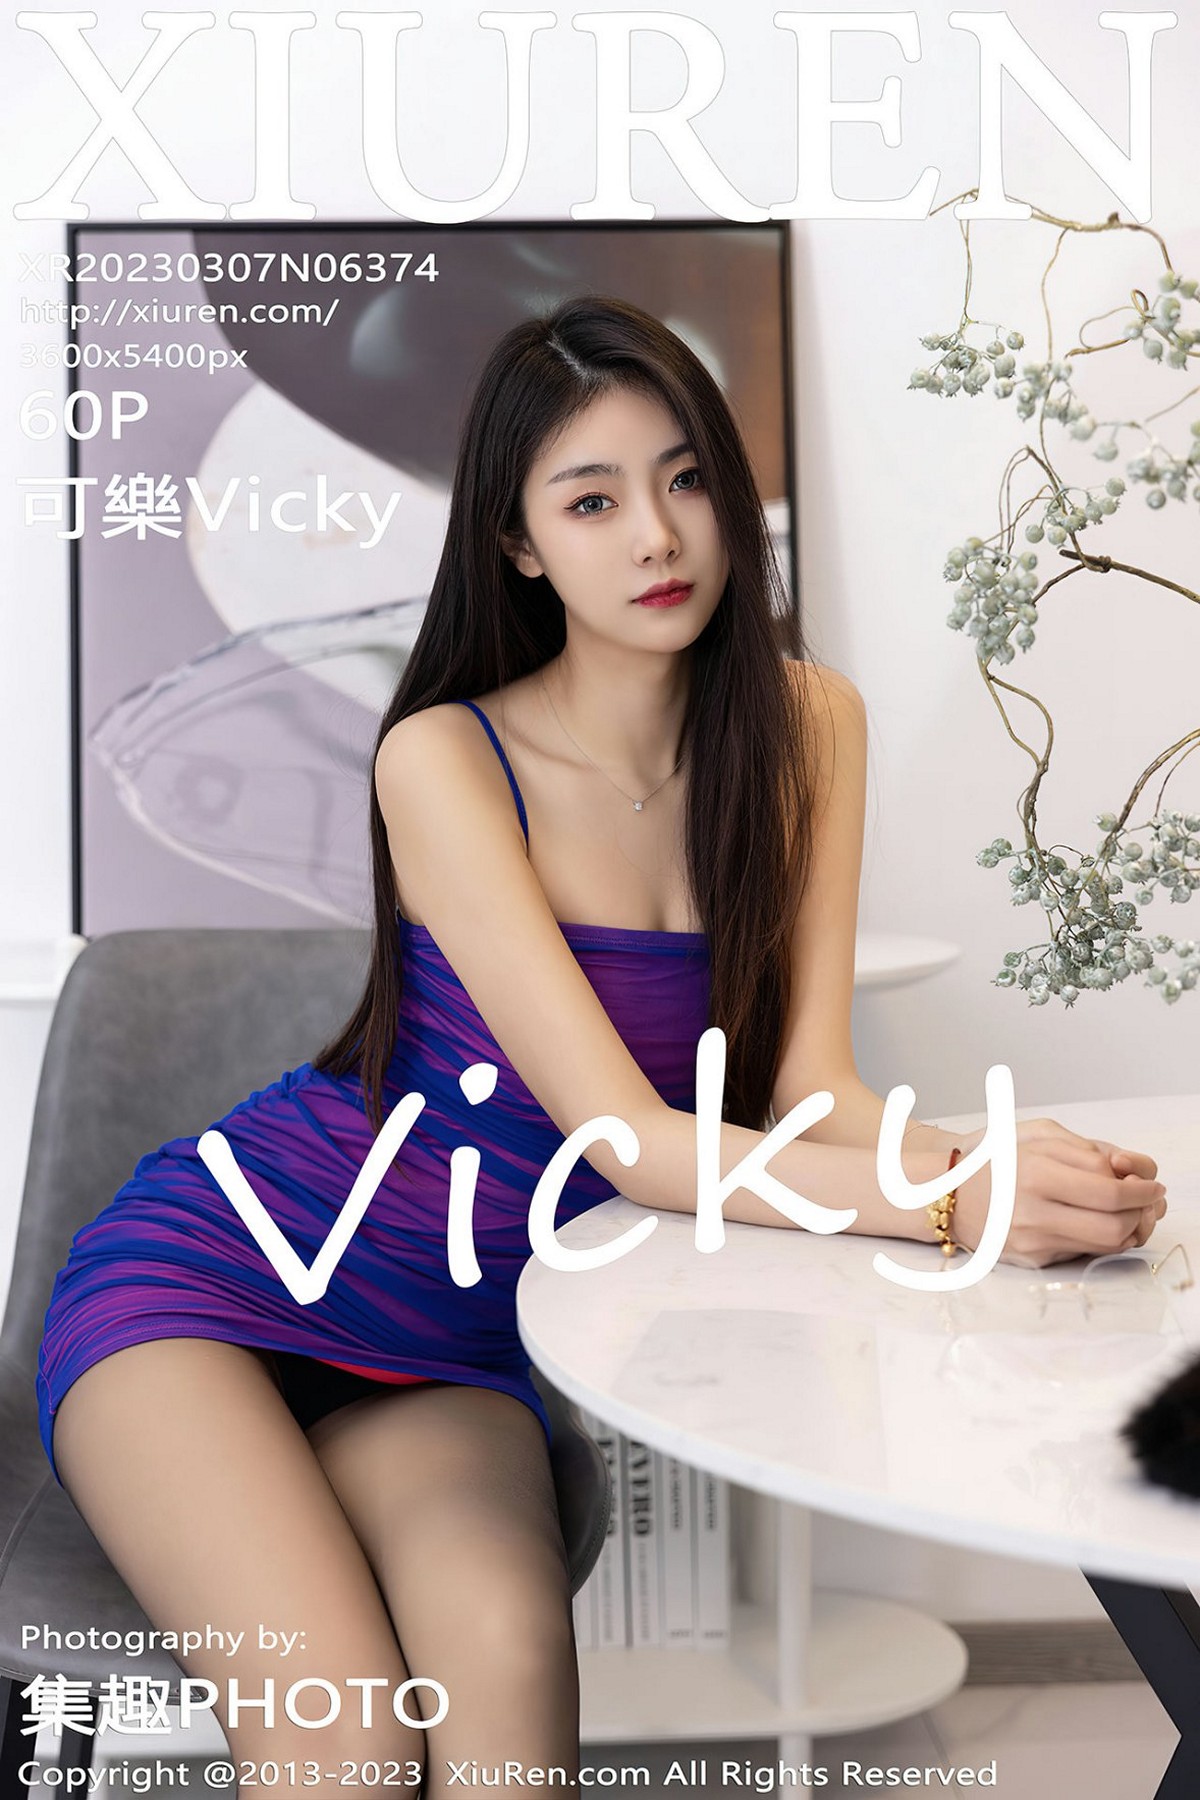 【XiuRen秀人網】2023.03.07 Vol.6374 可樂Vicky【60P】-六色网-六色网